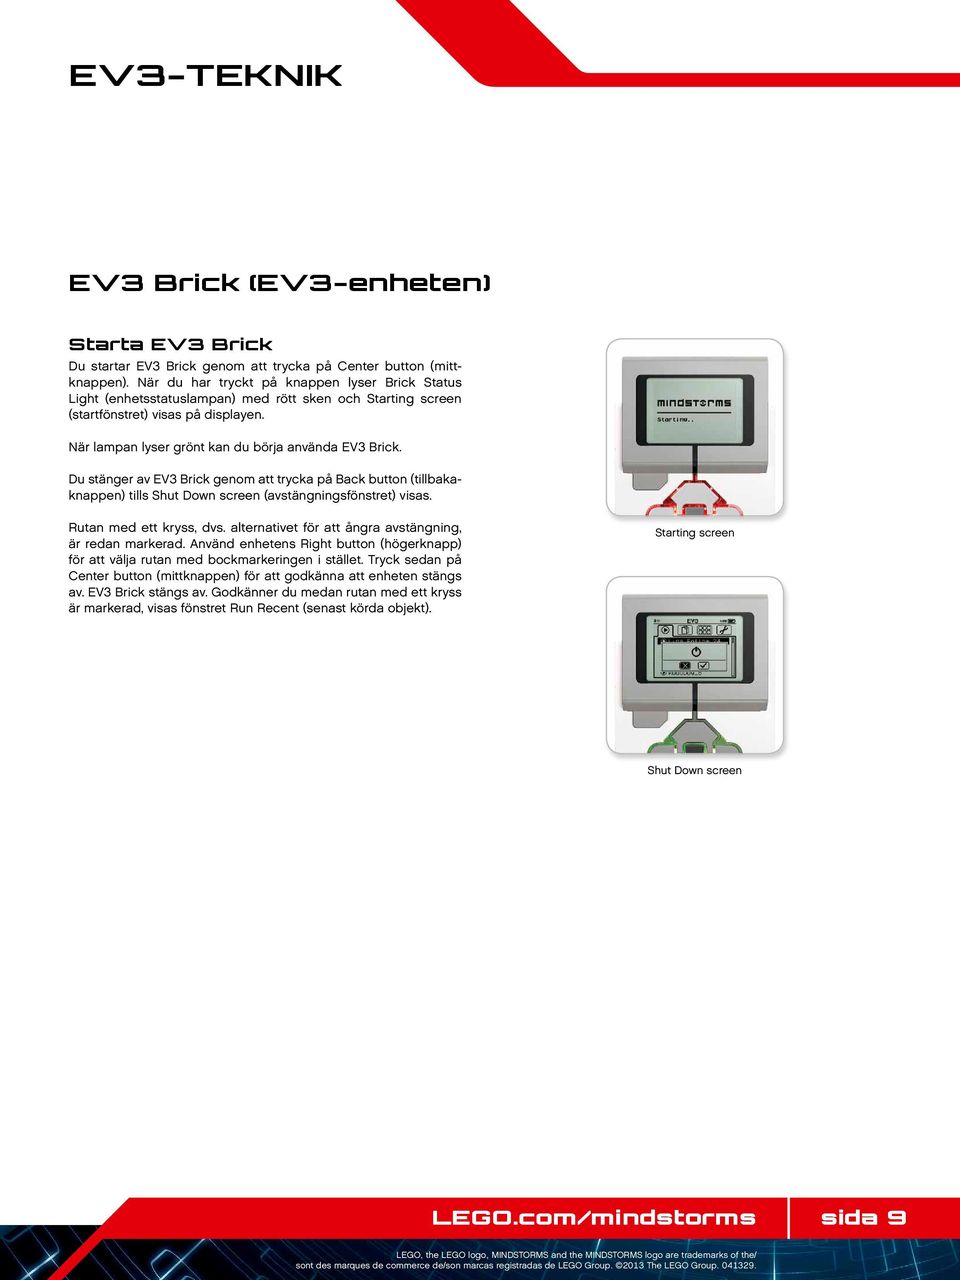 Du stänger av EV3 Brick genom att trycka på Back button (tillbakaknappen) tills Shut Down screen (avstängningsfönstret) visas. Rutan med ett kryss, dvs.